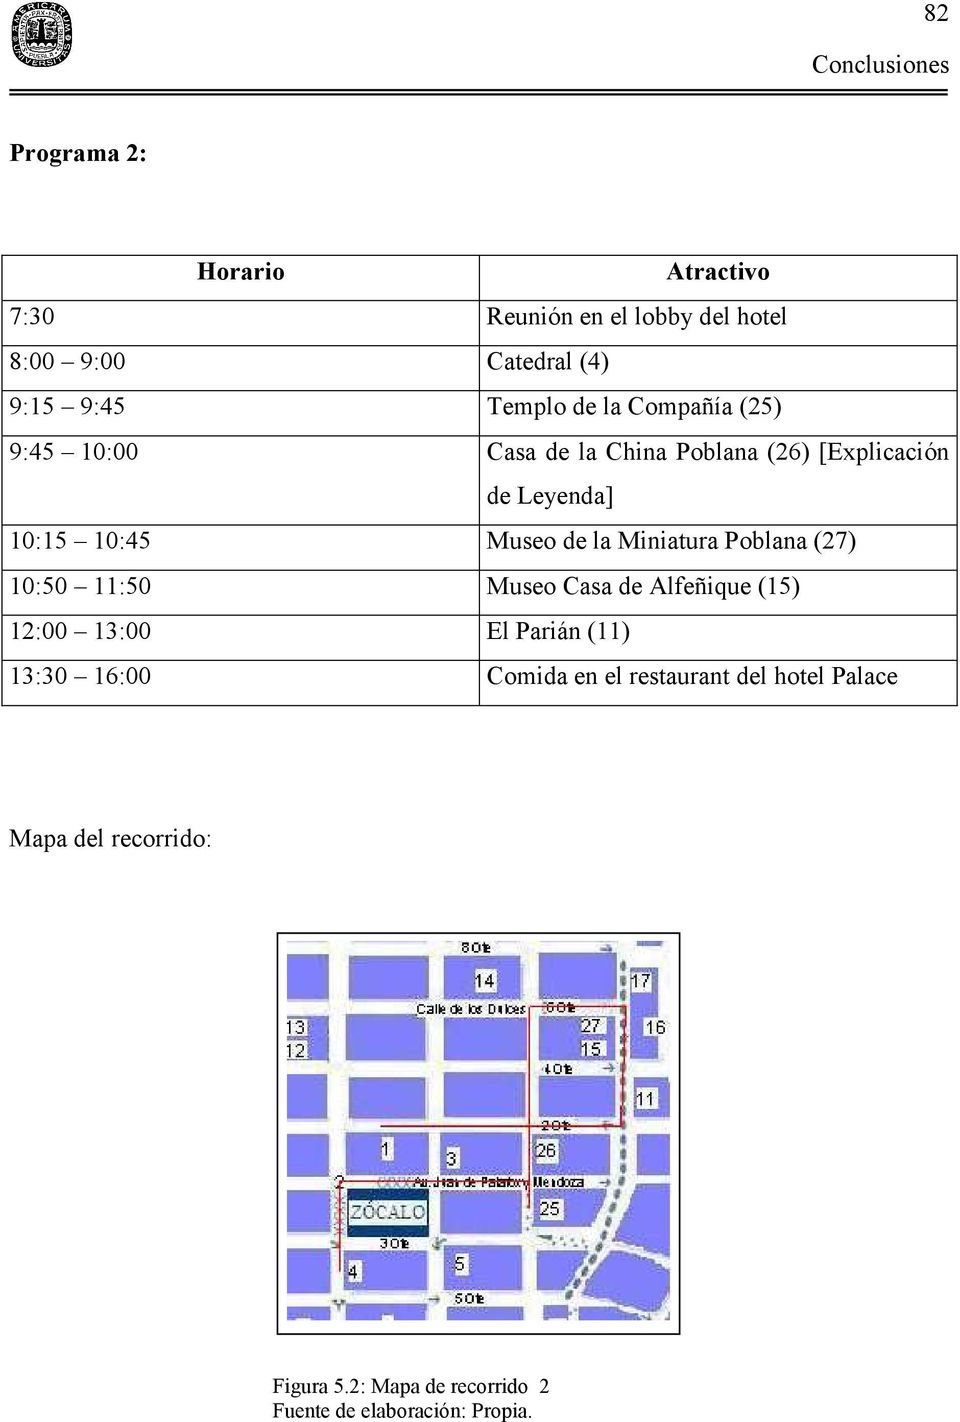 Miniatura Poblana (27) 10:50 11:50 Museo Casa de Alfeñique (15) 12:00 13:00 El Parián (11) 13:30 16:00 Comida